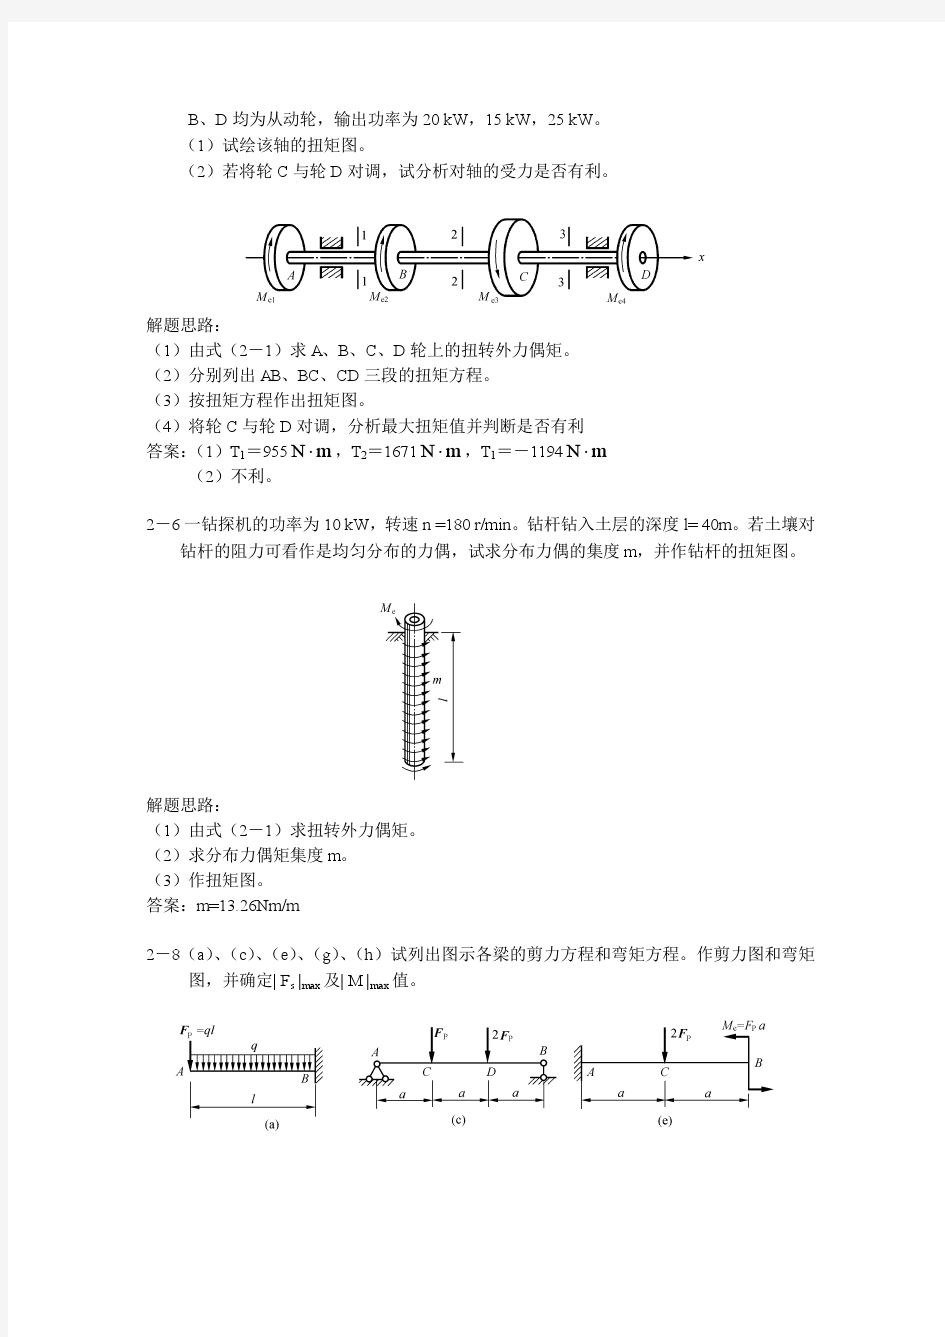 华南理工大学 材料力学 习题答案——第二版